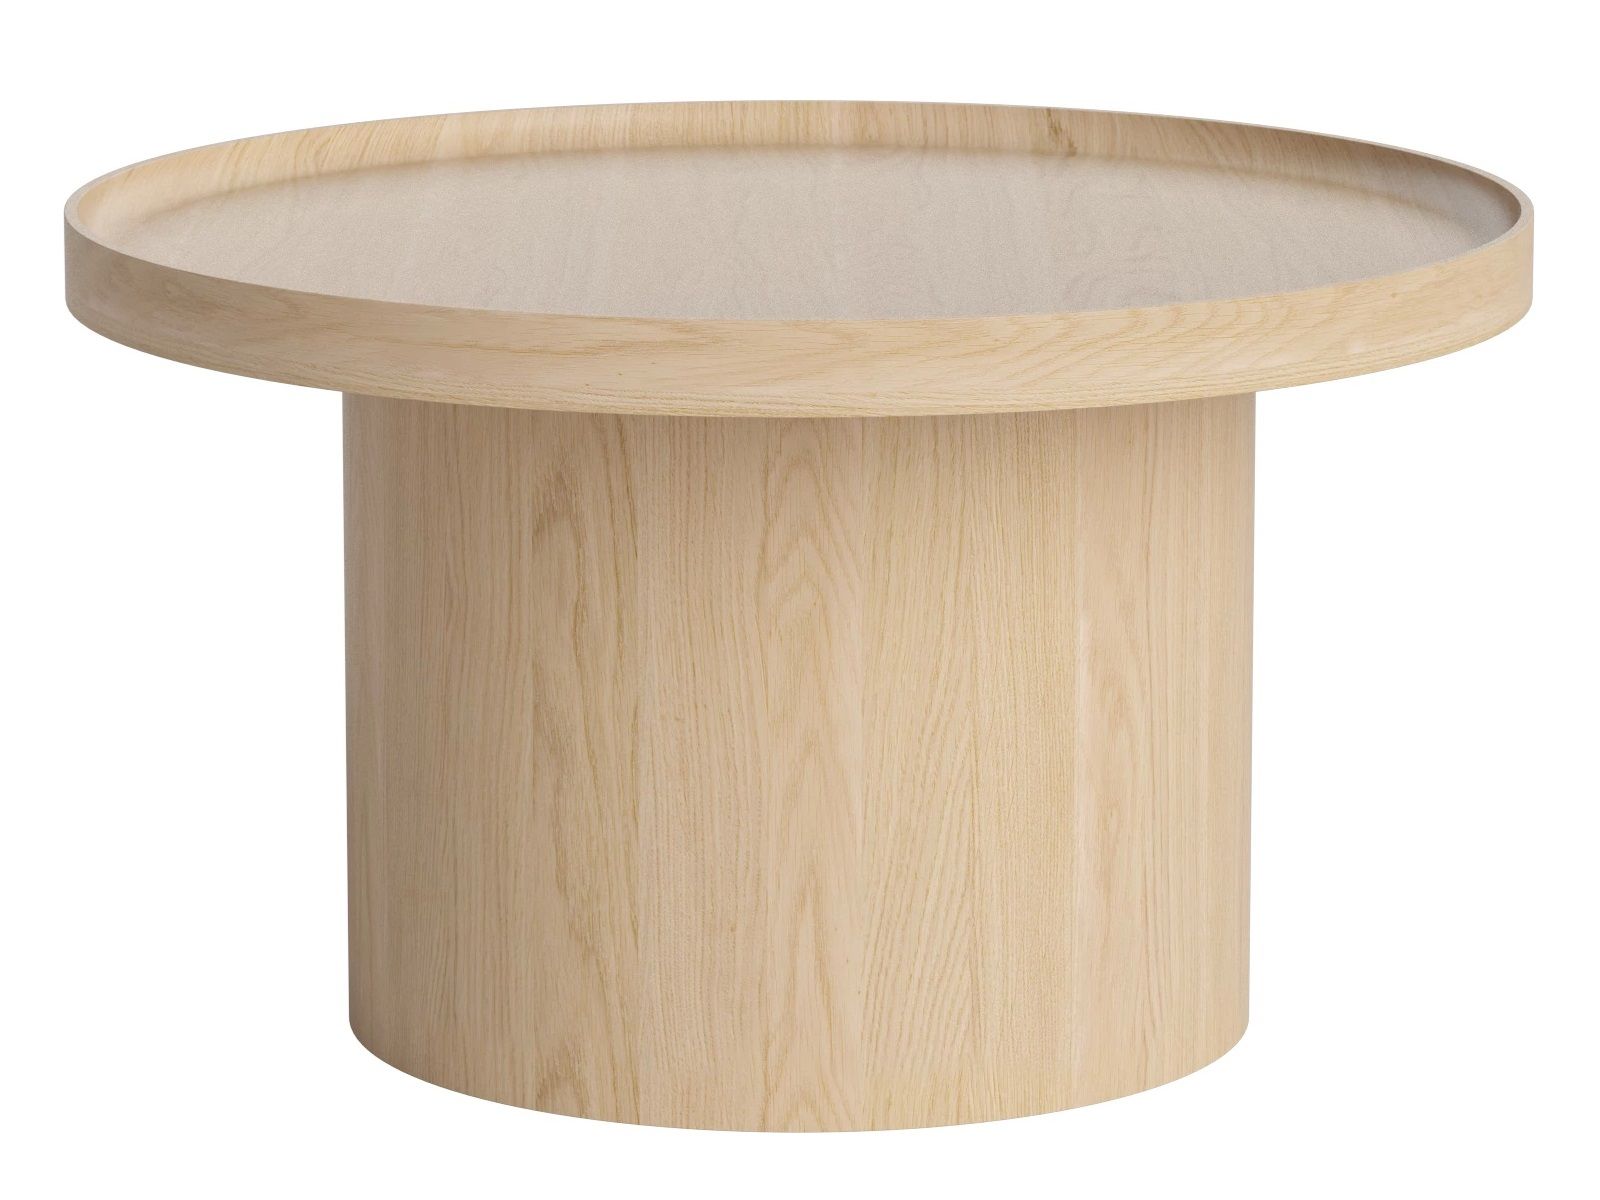 Bolia designové konferenční stoly Plateau Coffee Table Large (průměr 74 cm) - DESIGNPROPAGANDA